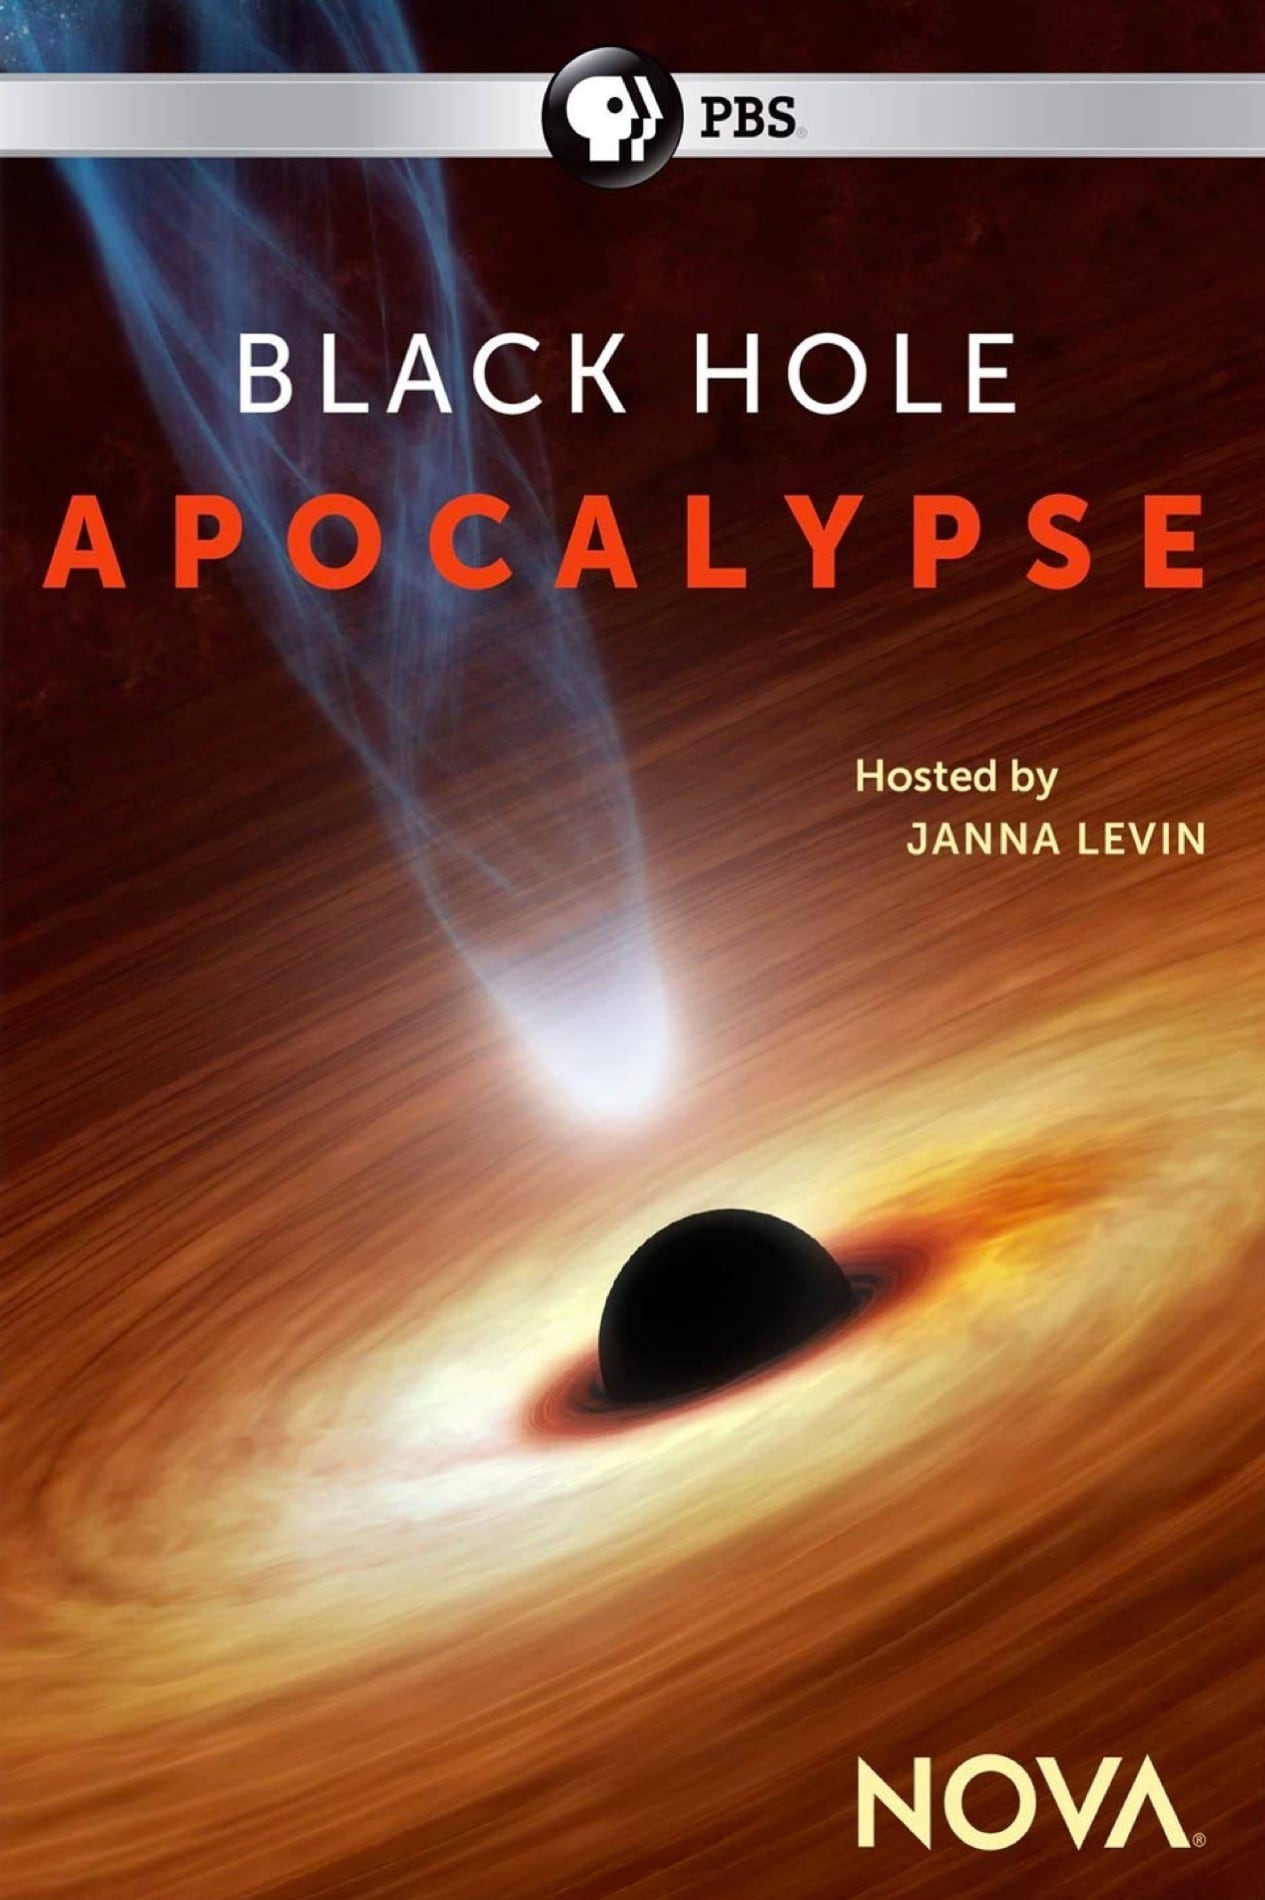 “Nova” Black Hole Apocalypse (2018) “โนวา” การเปิดเผยหลุมดำ